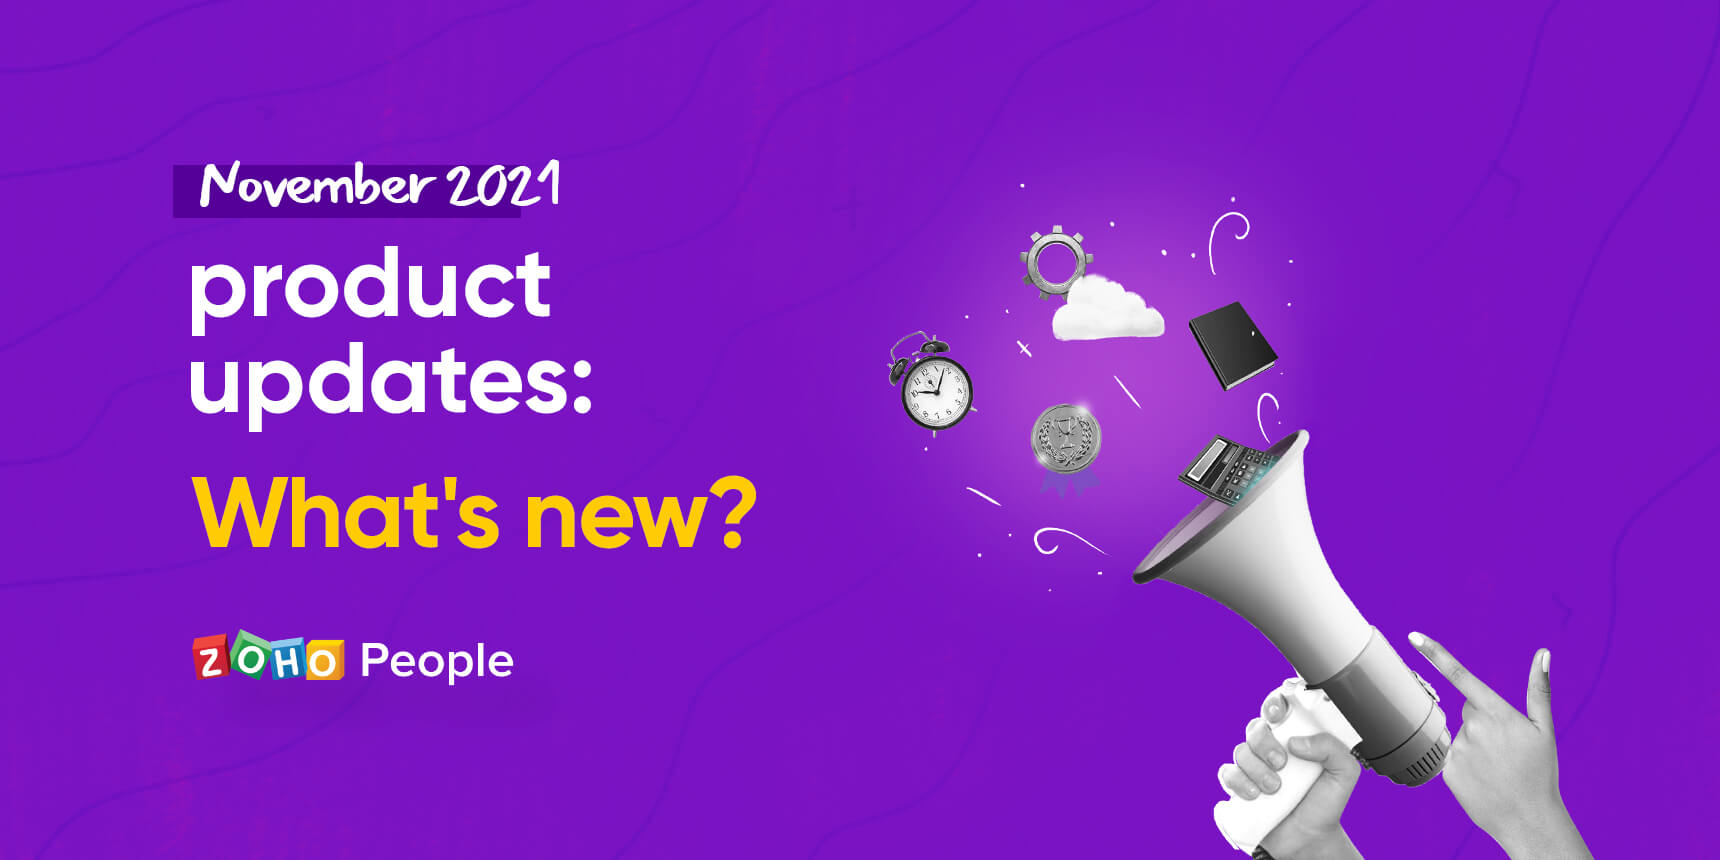 November 2021: Zoho People product updates